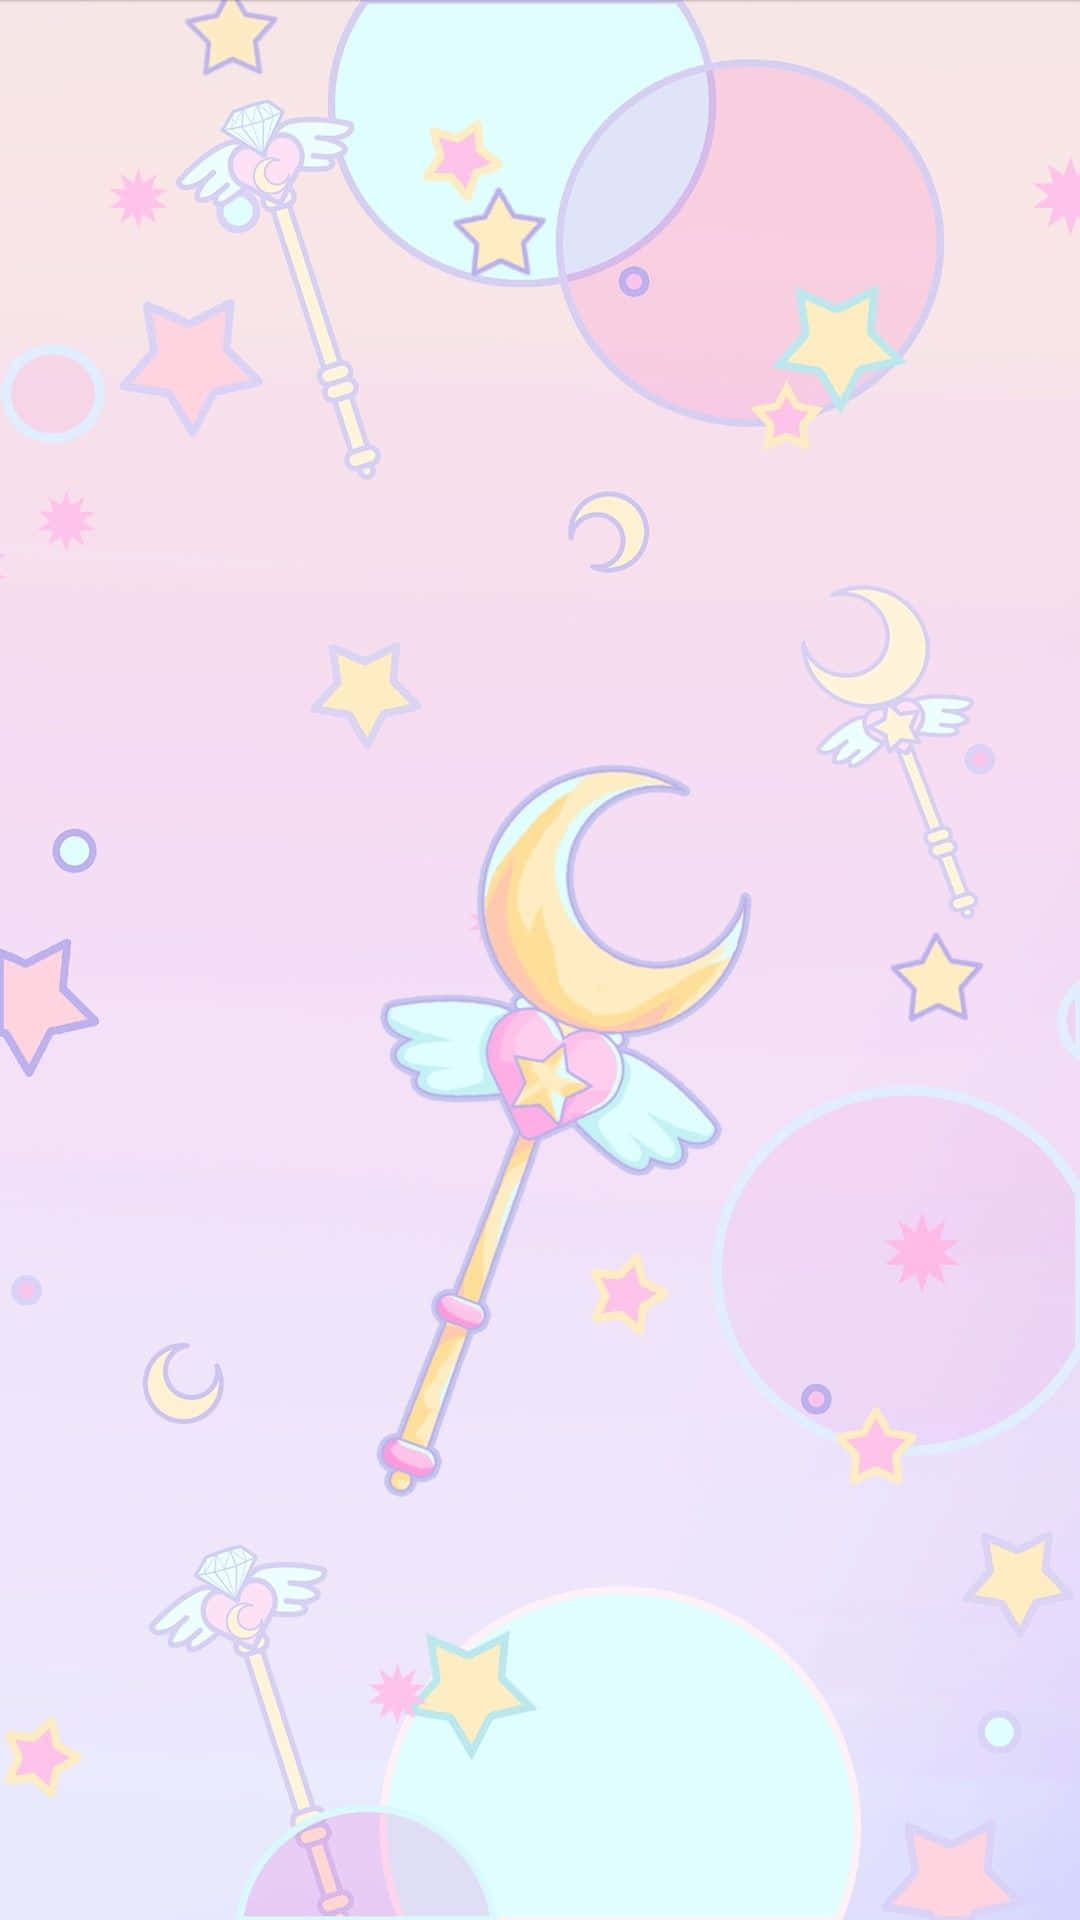 Solar System-Inspired Sailor Moon Pattern Wallpaper